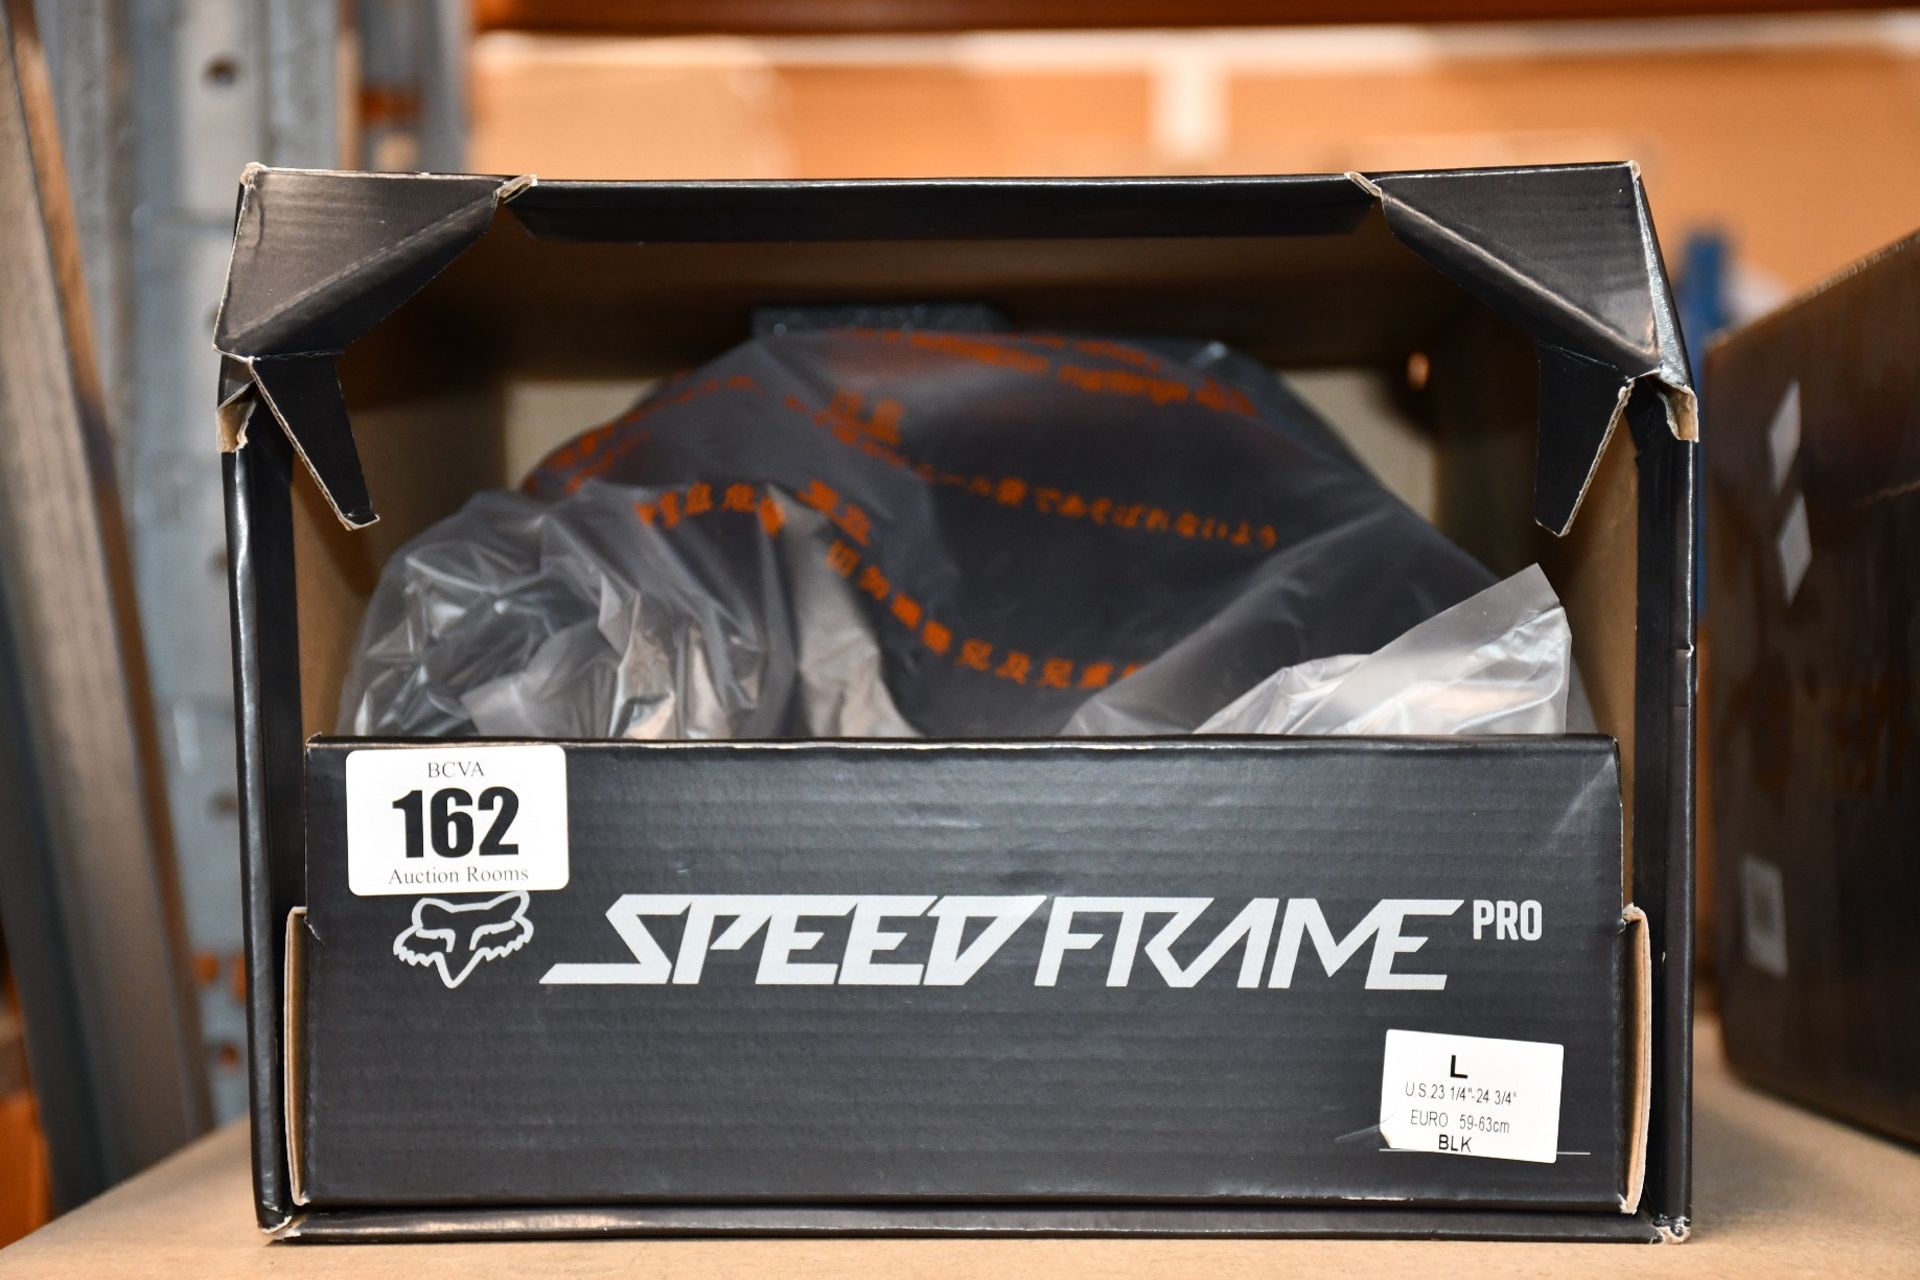 An as new Fox Speedframe Pro Mountain Bike Helmet in black (L).